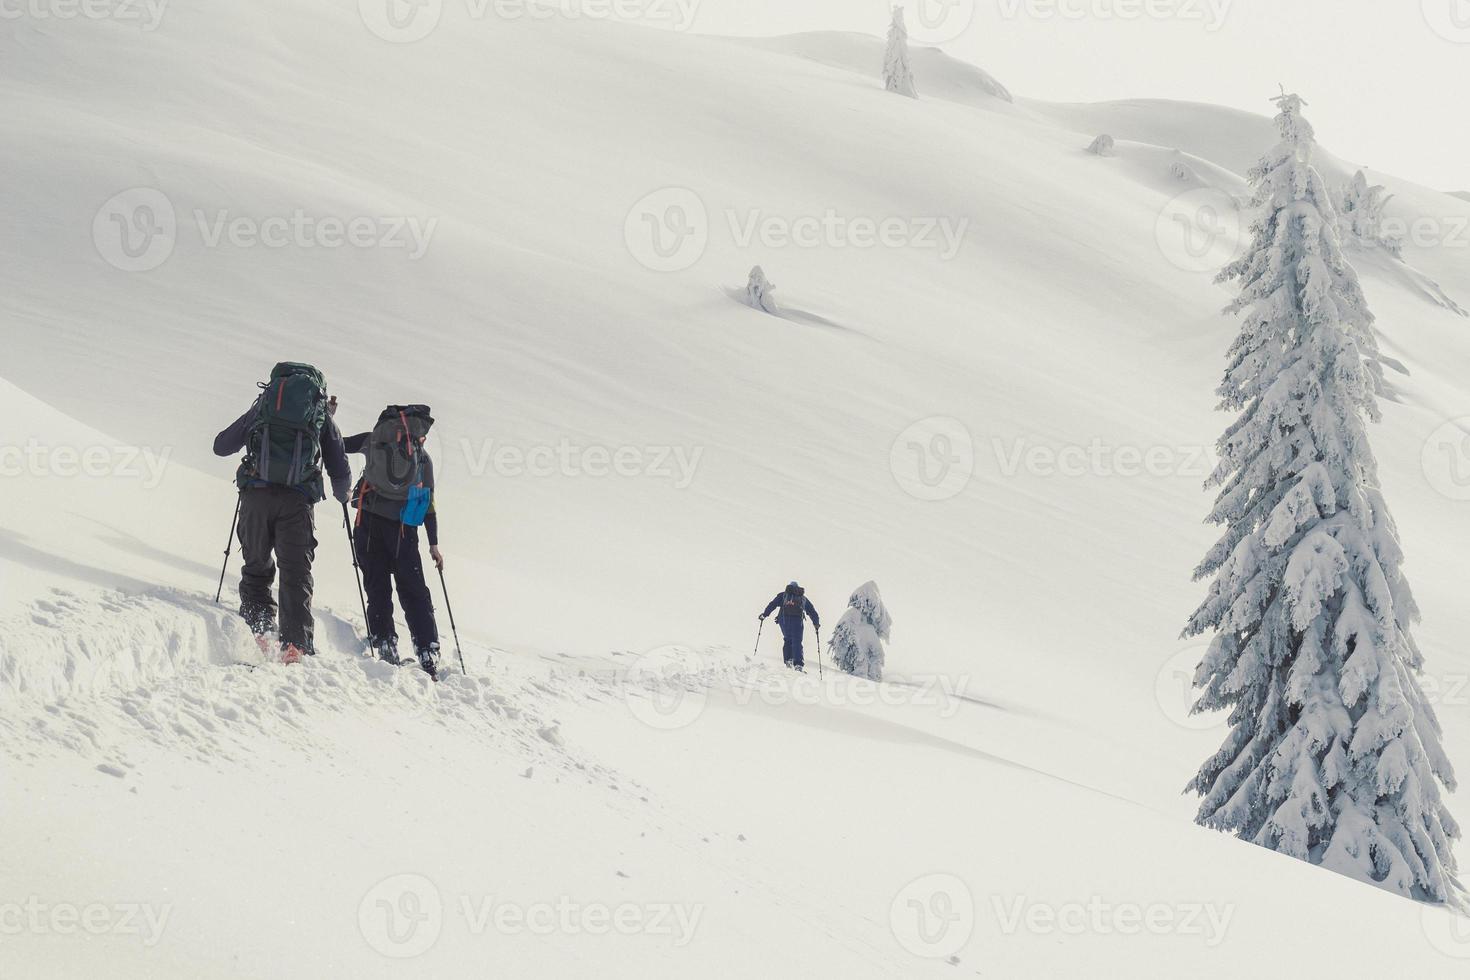 turistas avanzando en esquís foto de paisaje